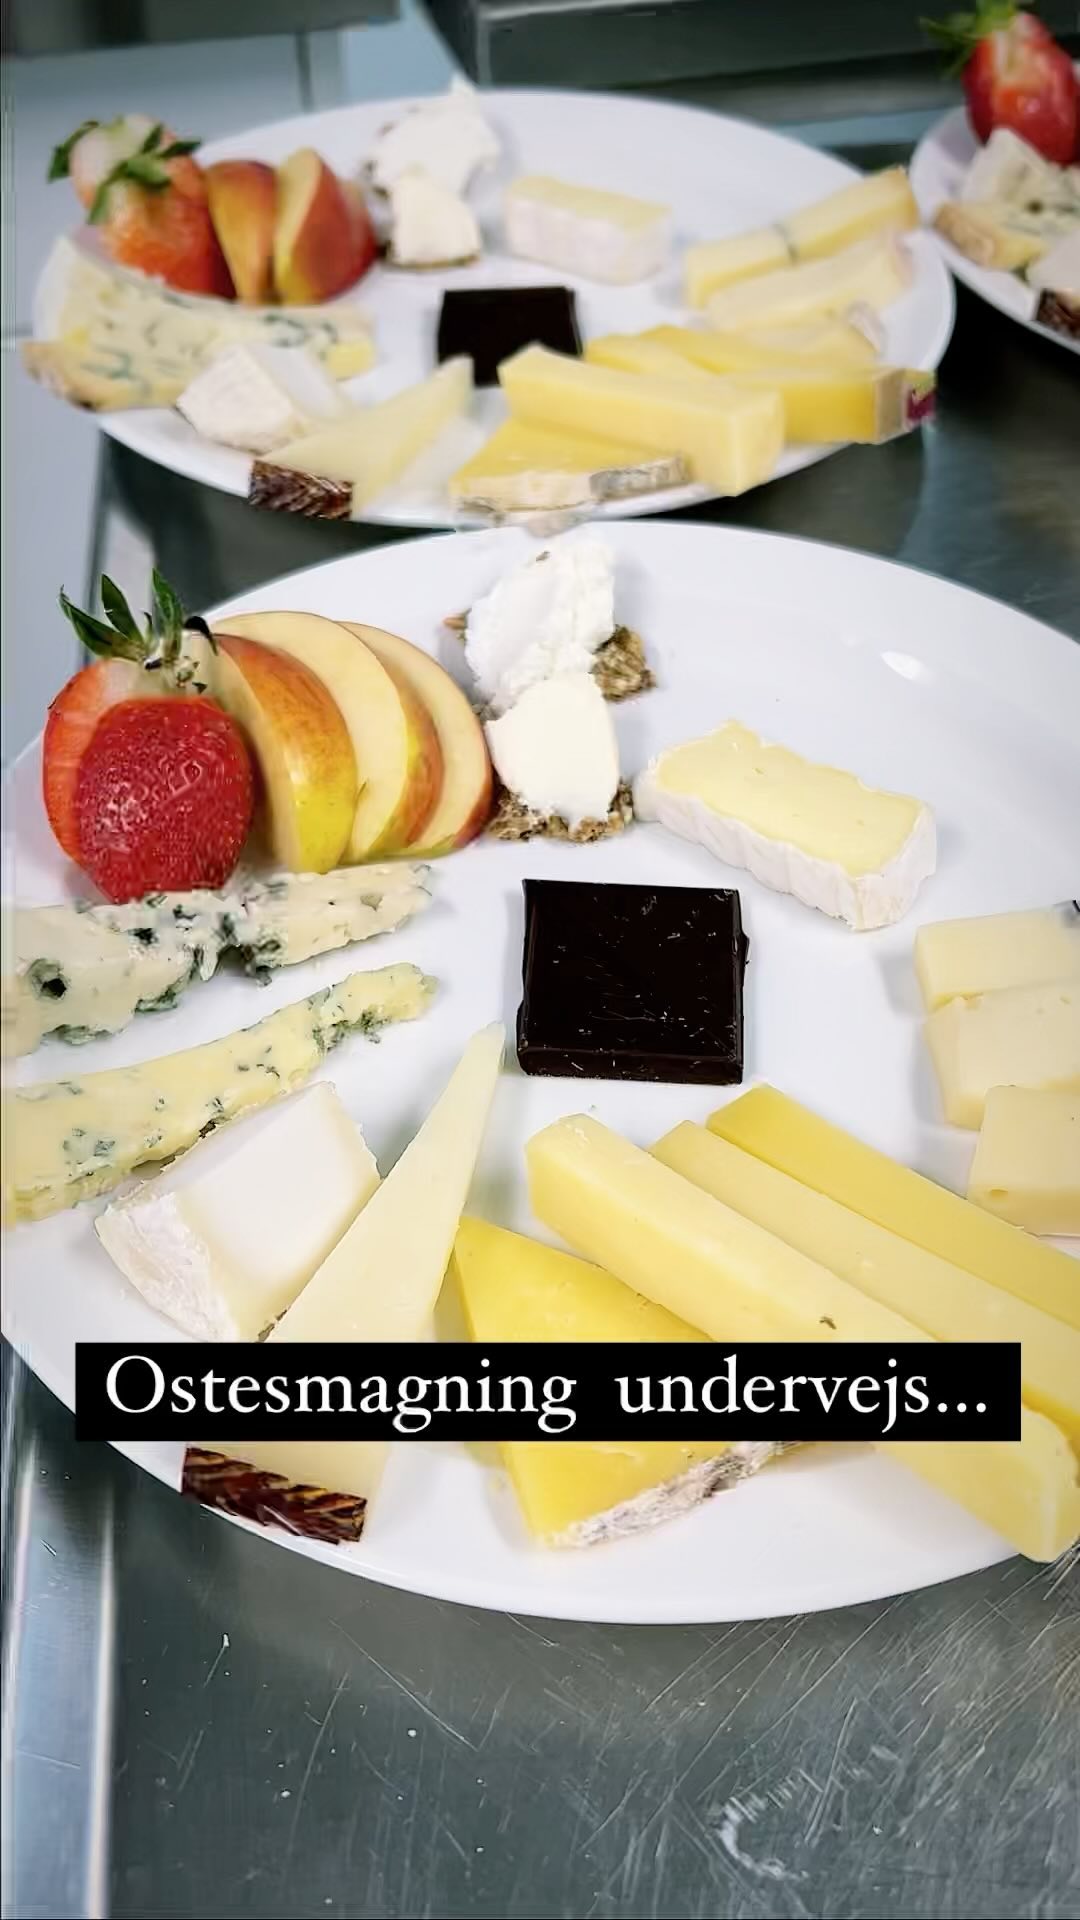 OSTESNAK PÅ EN MANDAG AFTEN
Der er noget magisk ved at mødes over en bid ost og udveksle historier. Især når deltagerne kommer fra ni forskellige nationaliteter med hver deres ostekultur og -traditioner. 
.
.
.

#ostesnak #cheesetalks #cheese #cheeseislife #cheeselovers #instacheese #cheeseplease #ost #cheeseblogger #foodie #fromage #cheeseblog #cheesephoto #cheesephotography 
#onmytable #onmyplate 
#cheeseplate #cheeseplatter #ostebord #ostebræt #cheeseboard #ostesmagning #cheesetasting